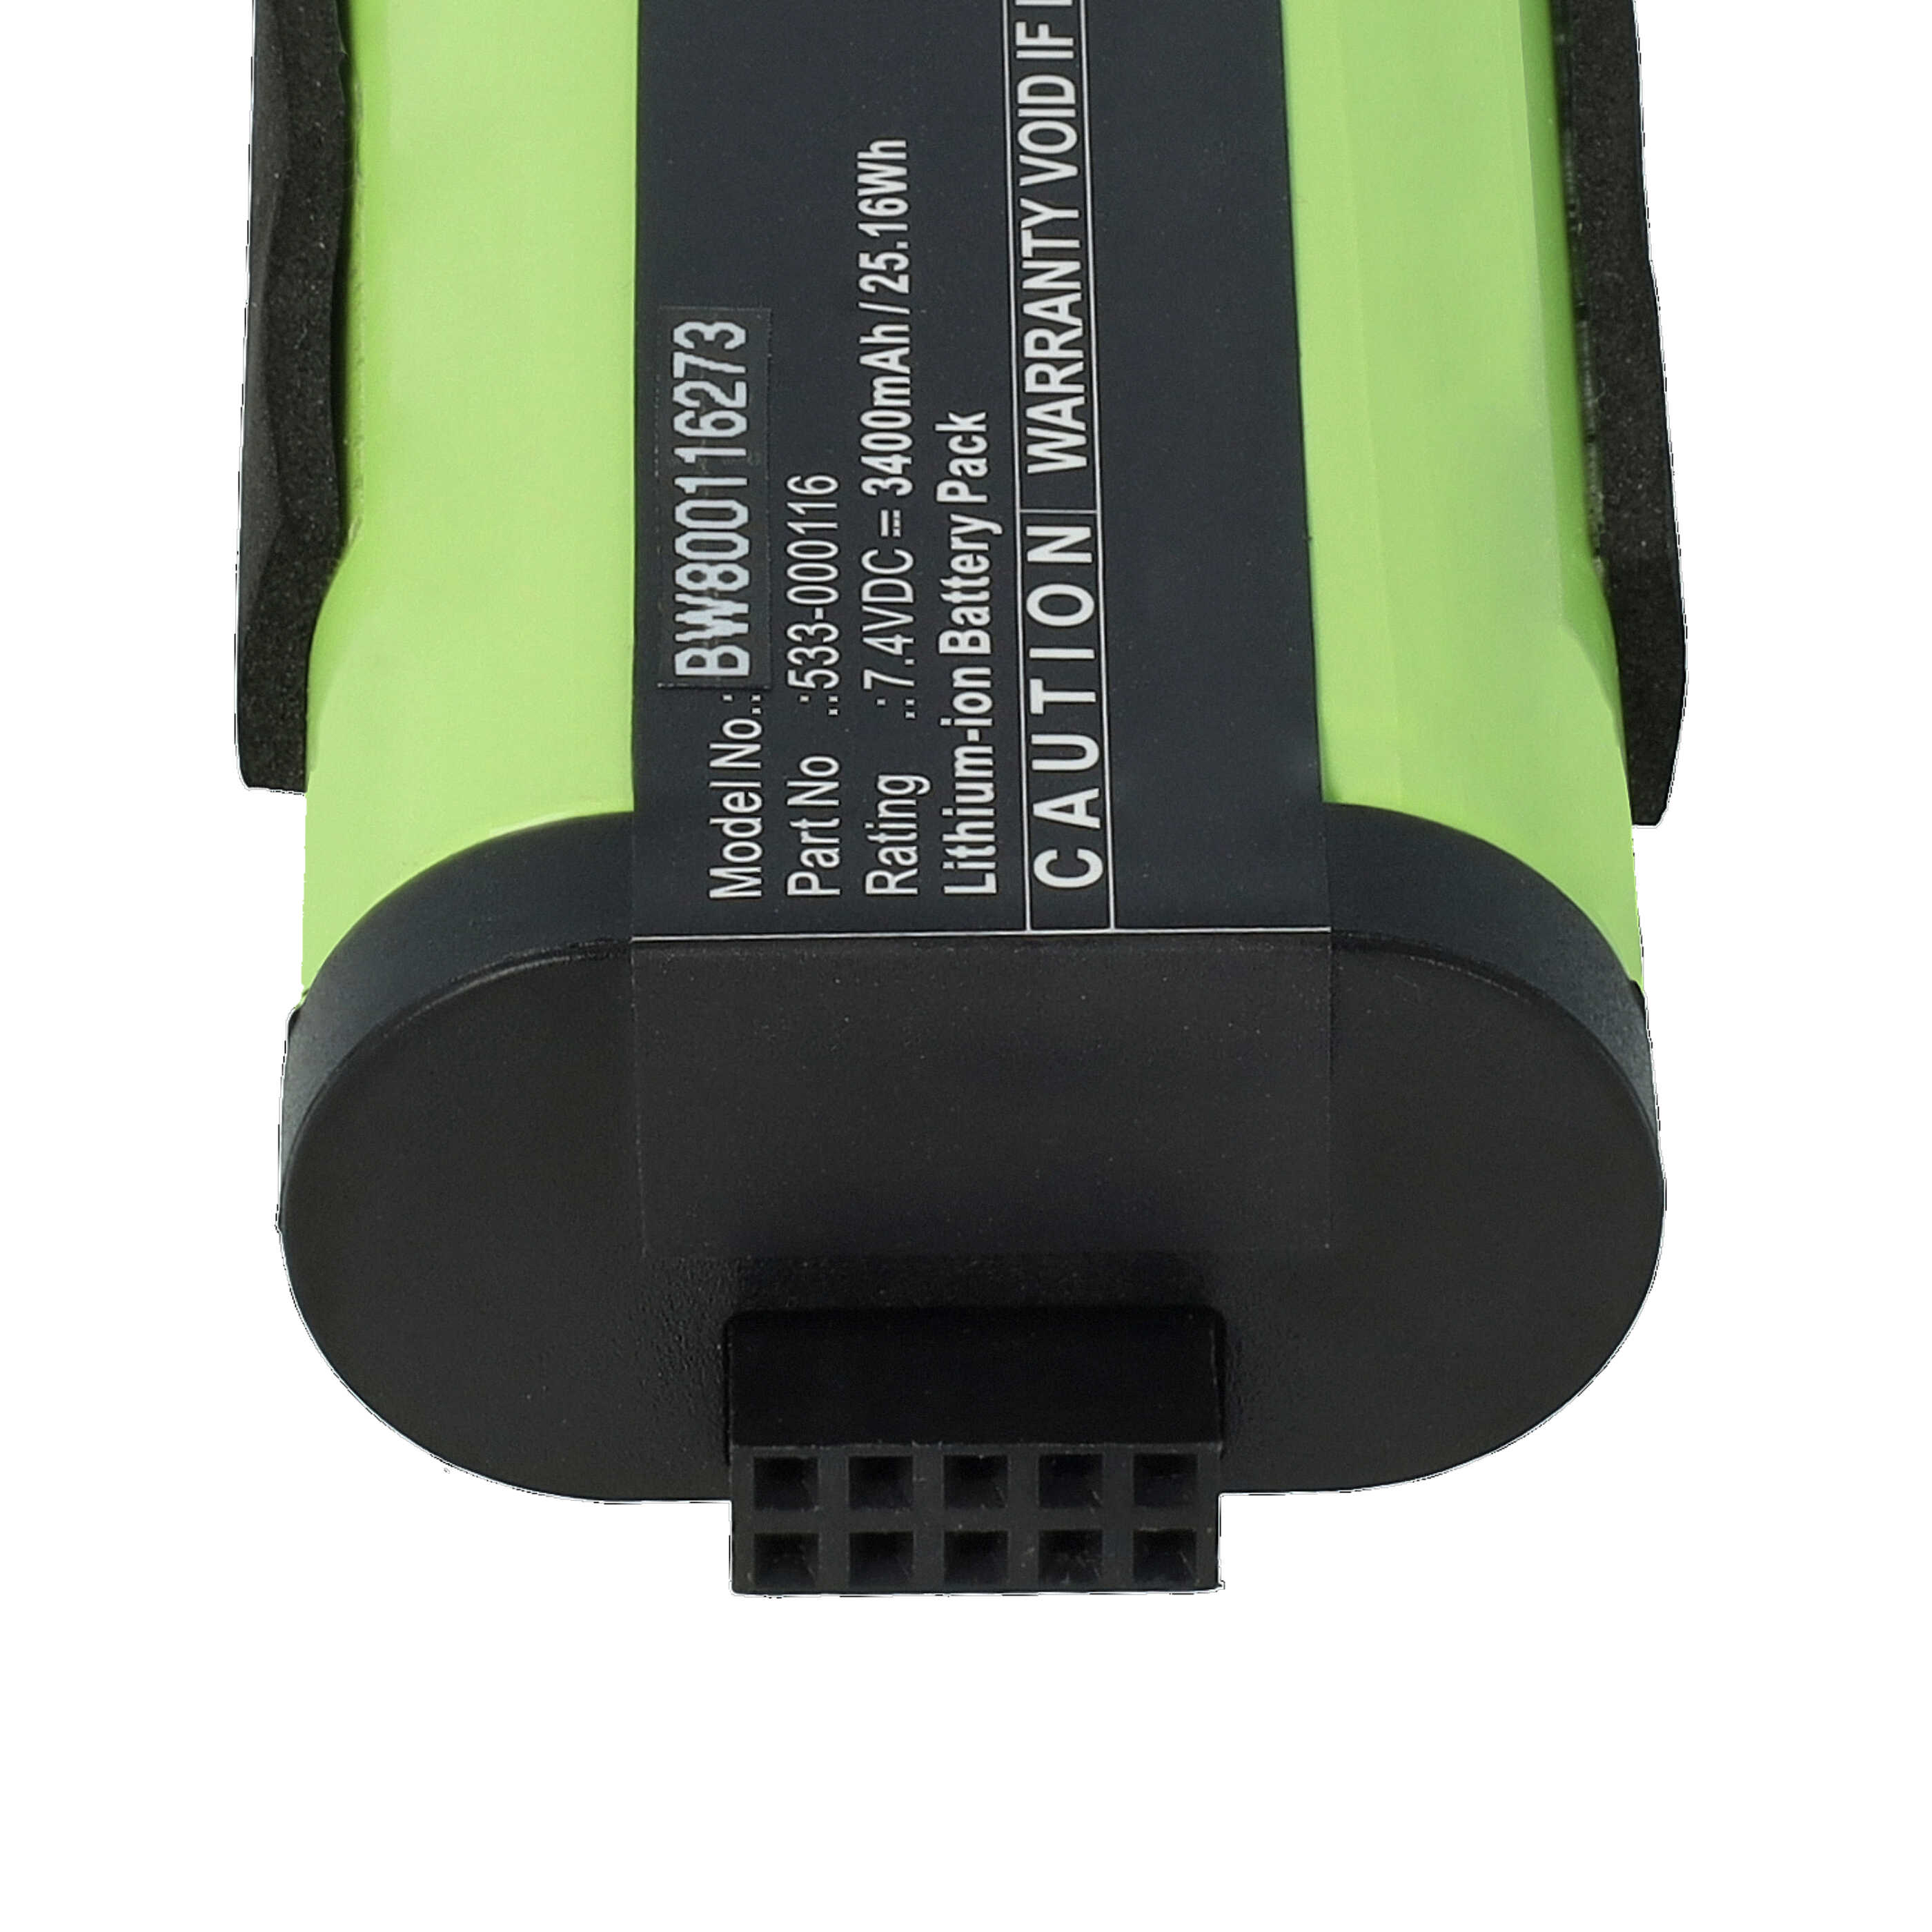 Batterie remplace Logitech 533-000116, 533-000138 pour enceinte Logitech - 3400mAh 7,4V Li-ion